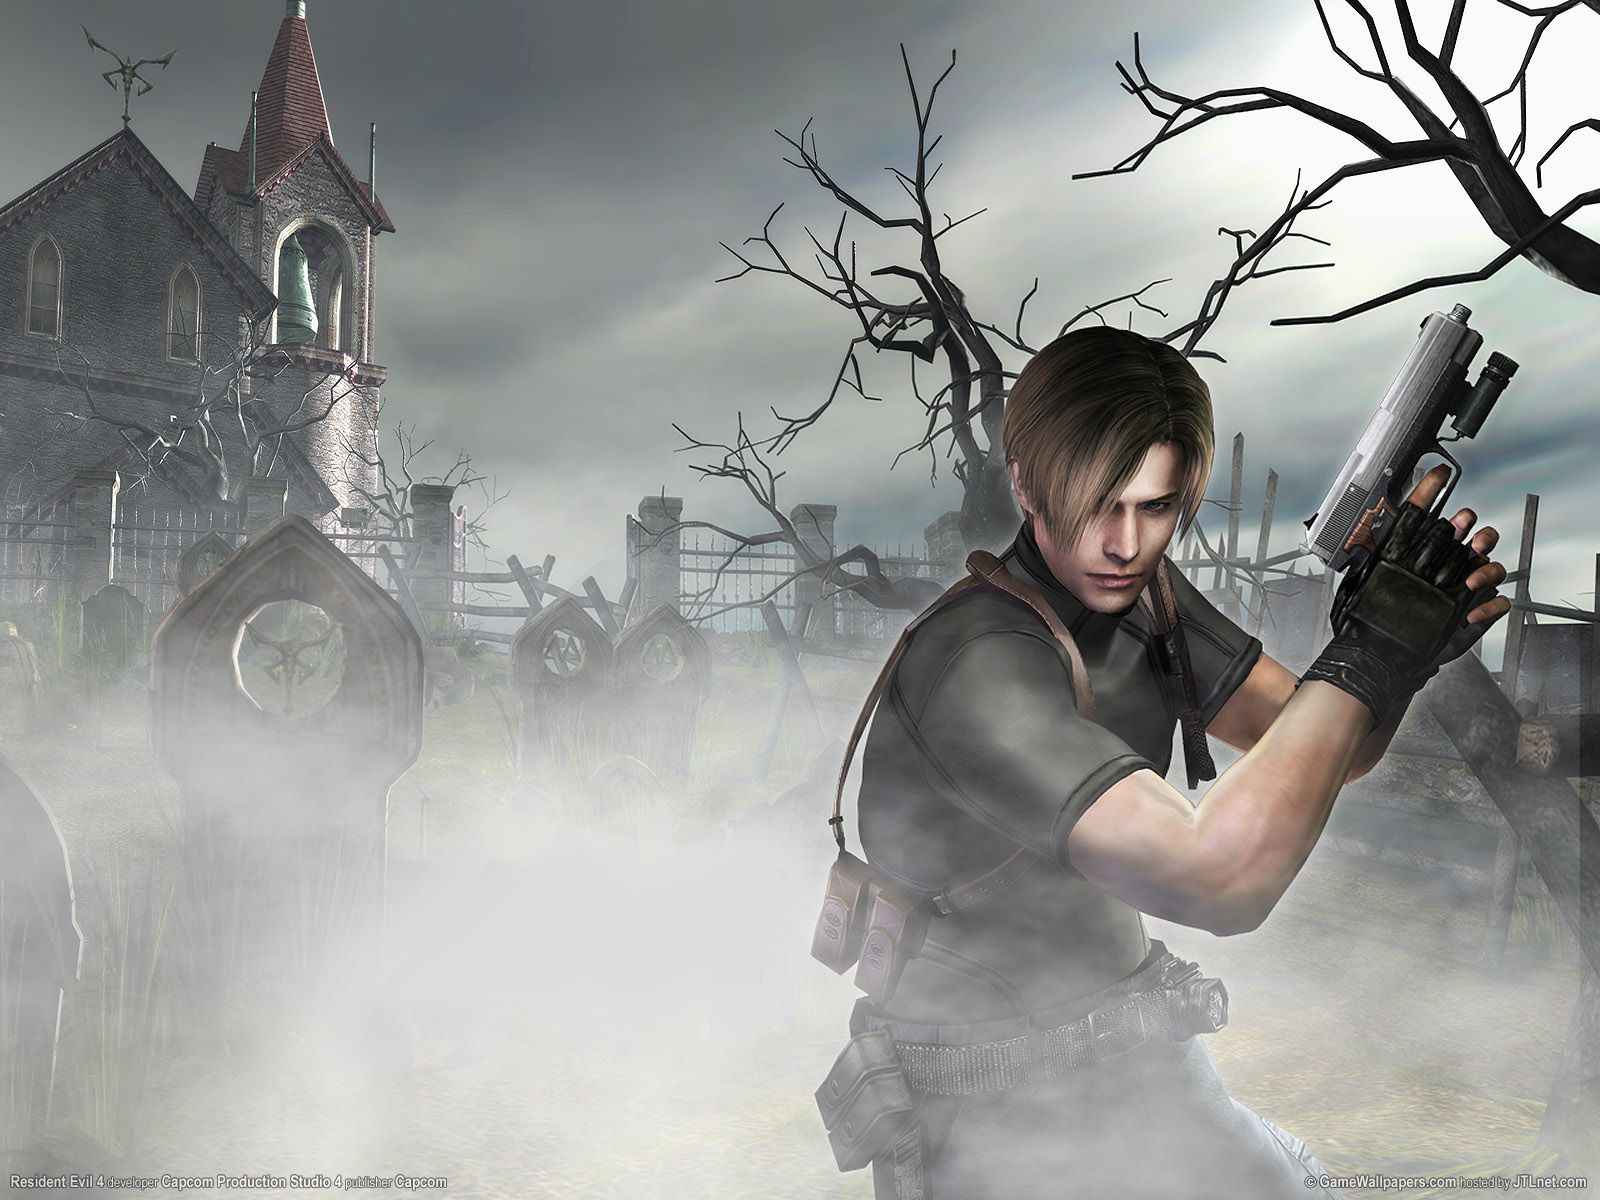 Resident Evil 4 wallpapers | Resident Evil 4 stock photos